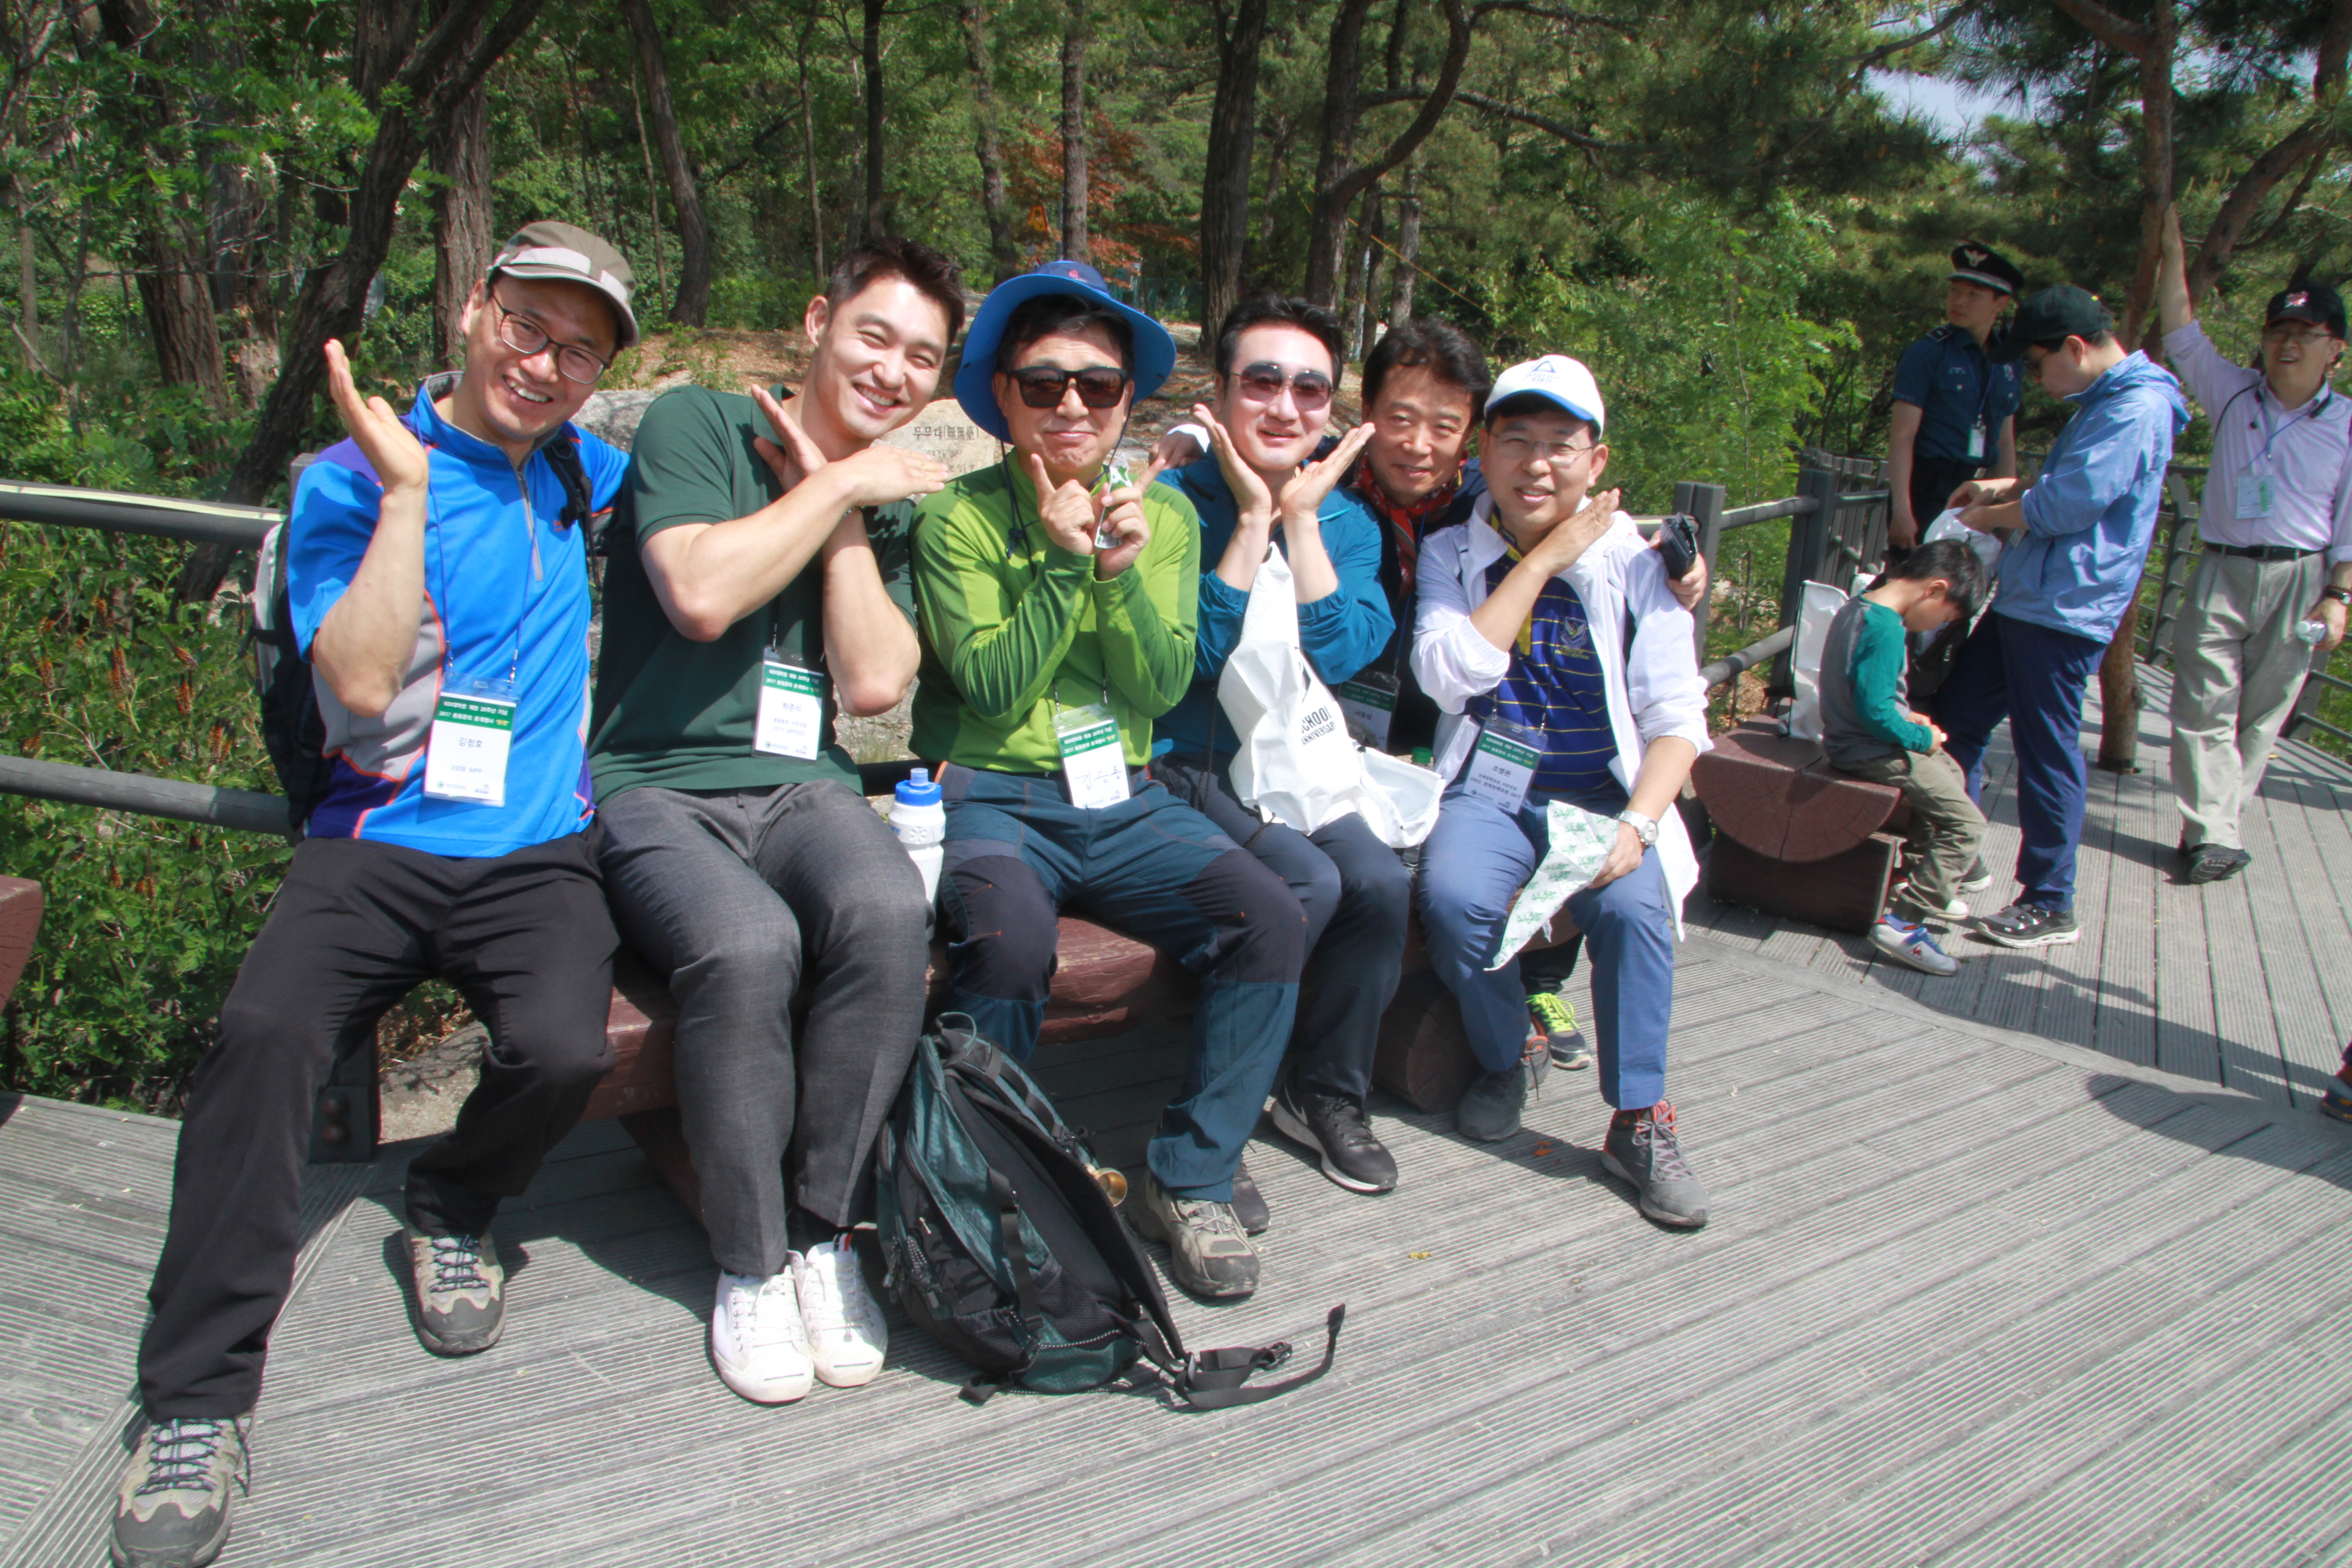 2017 KDI대학원 개원 20주년 기념 총동문회 춘계행사 “동행” / 2017 Alumni Spring Hiking Event “Companion” 사진1